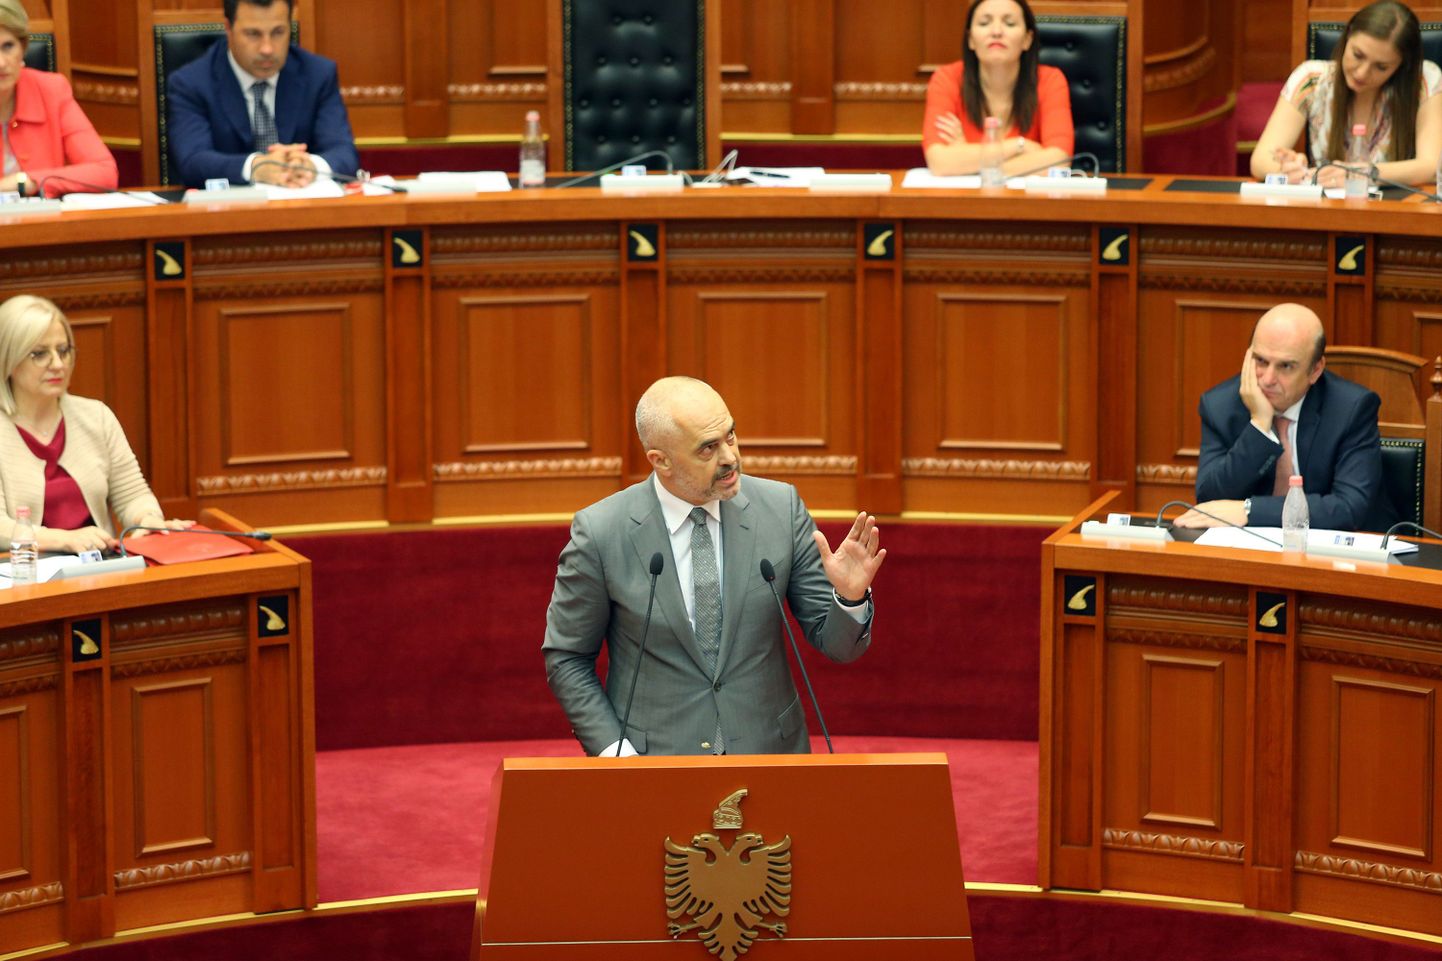 Albaania peaminister Edi Rama kõnelemas tänasel parlamendiistungil, kus võeti vastu justiitsreform.